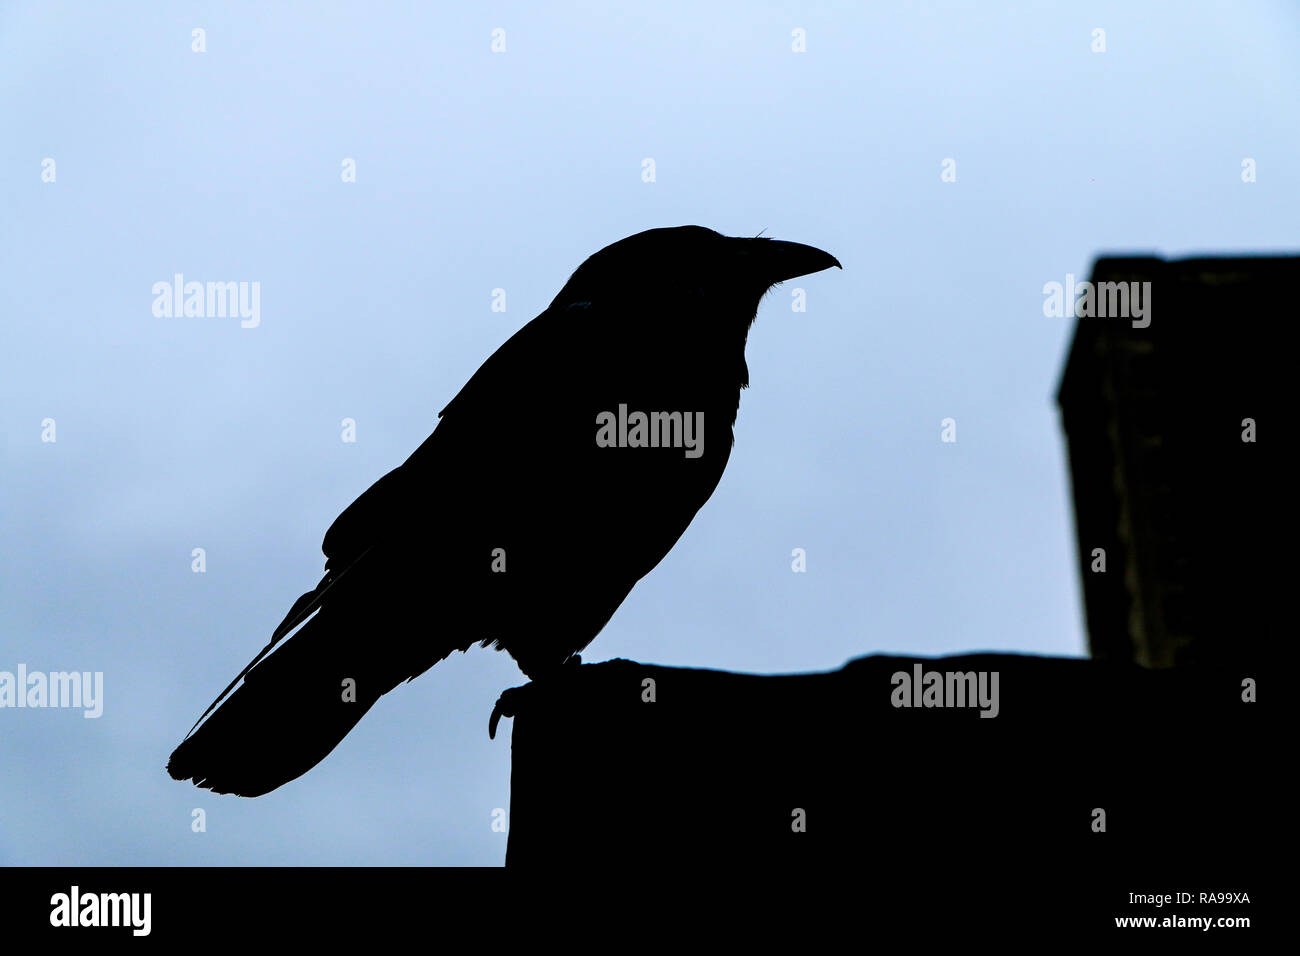 Eine Silhouette des Raven stehend an der Wand. Wächter des Tower in London. Stockfoto